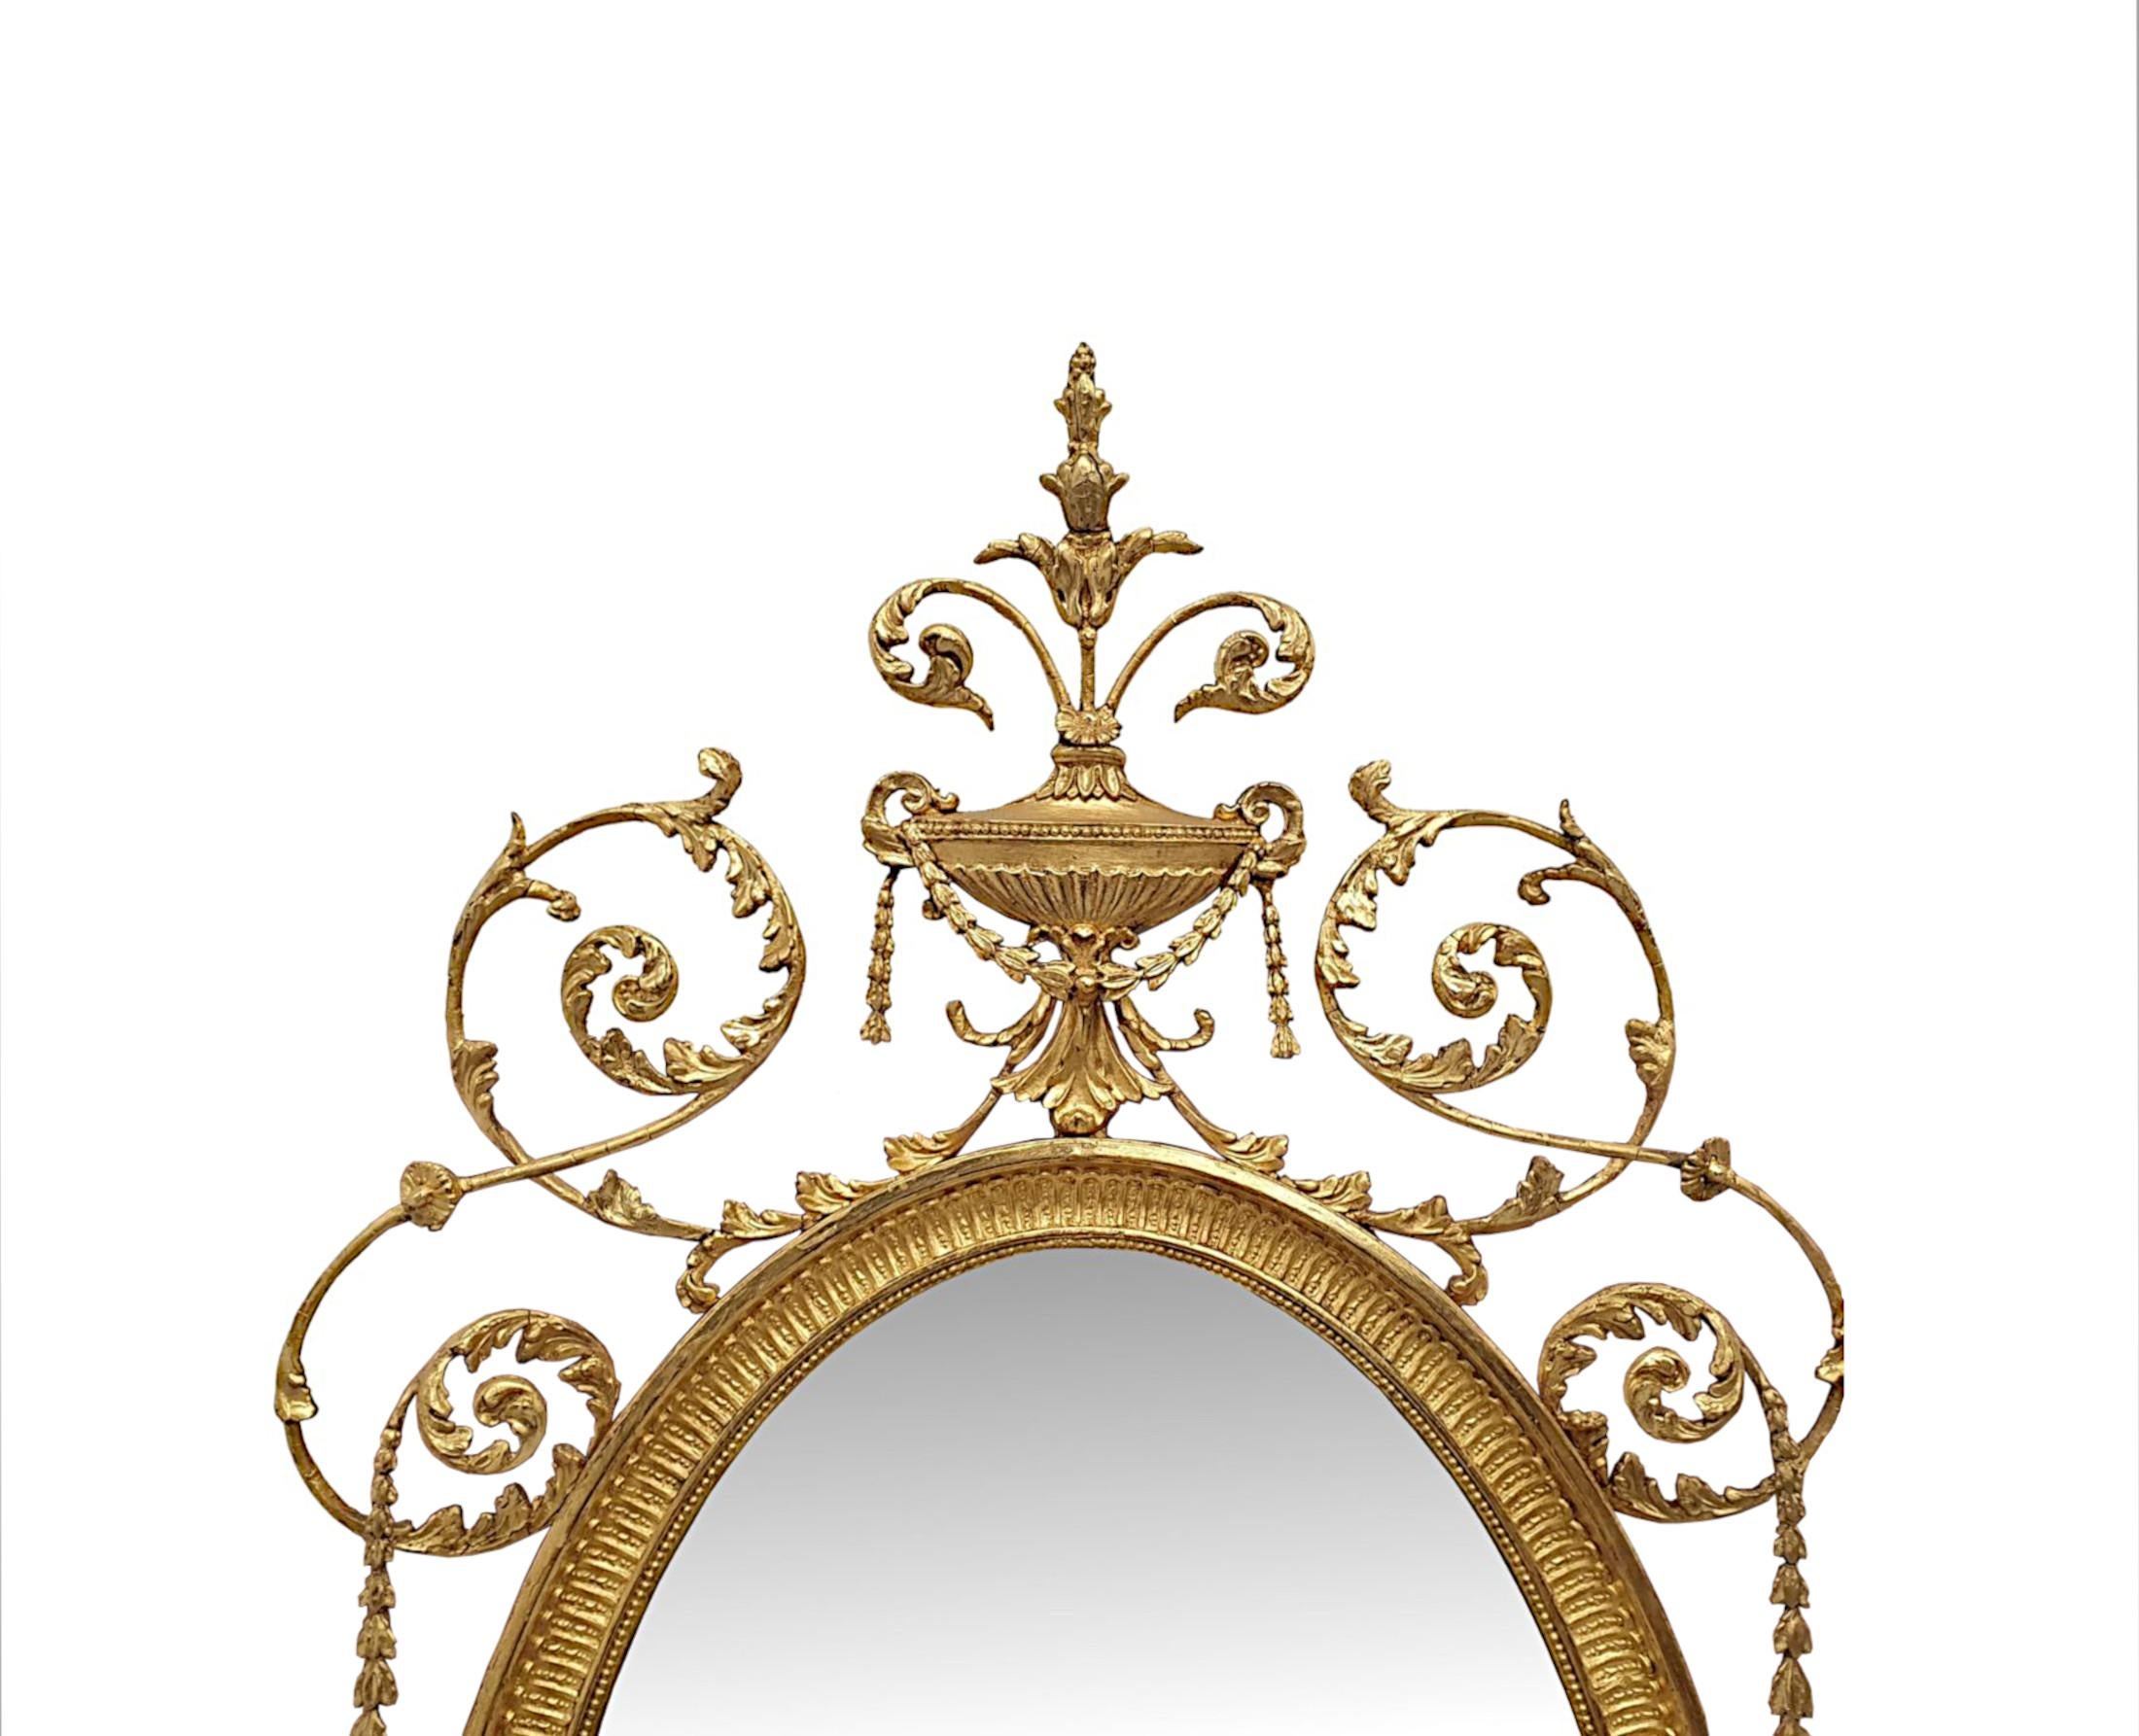 Ein sehr schöner und seltener Spiegel aus vergoldetem Holz des späten 19. Jahrhunderts in der Art von Adams, mit beeindruckenden Proportionen und in schönem Originalzustand.  Die abgeschrägte, ovale Spiegelglasplatte befindet sich in einem